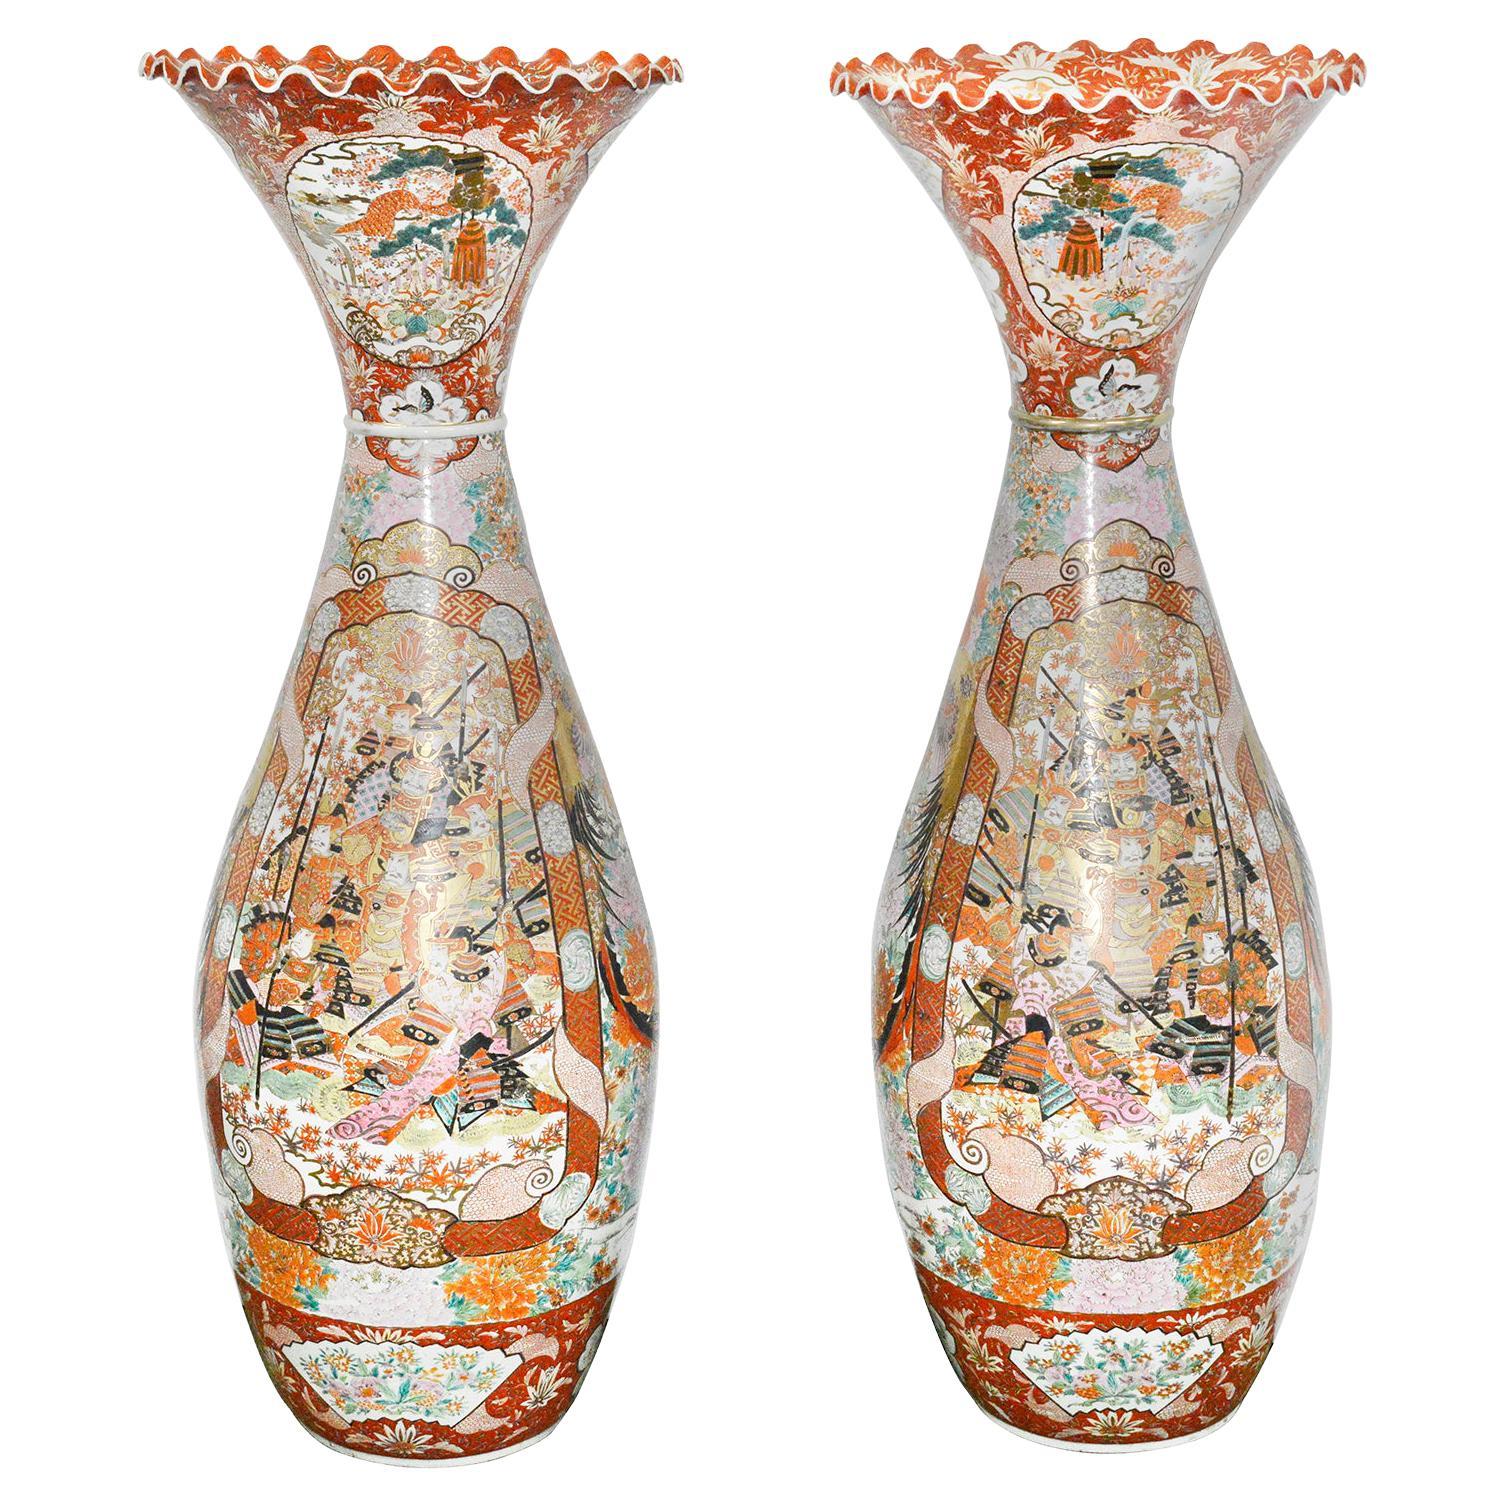 Paire de grands vases japonais Kutani, datant d'environ 1900